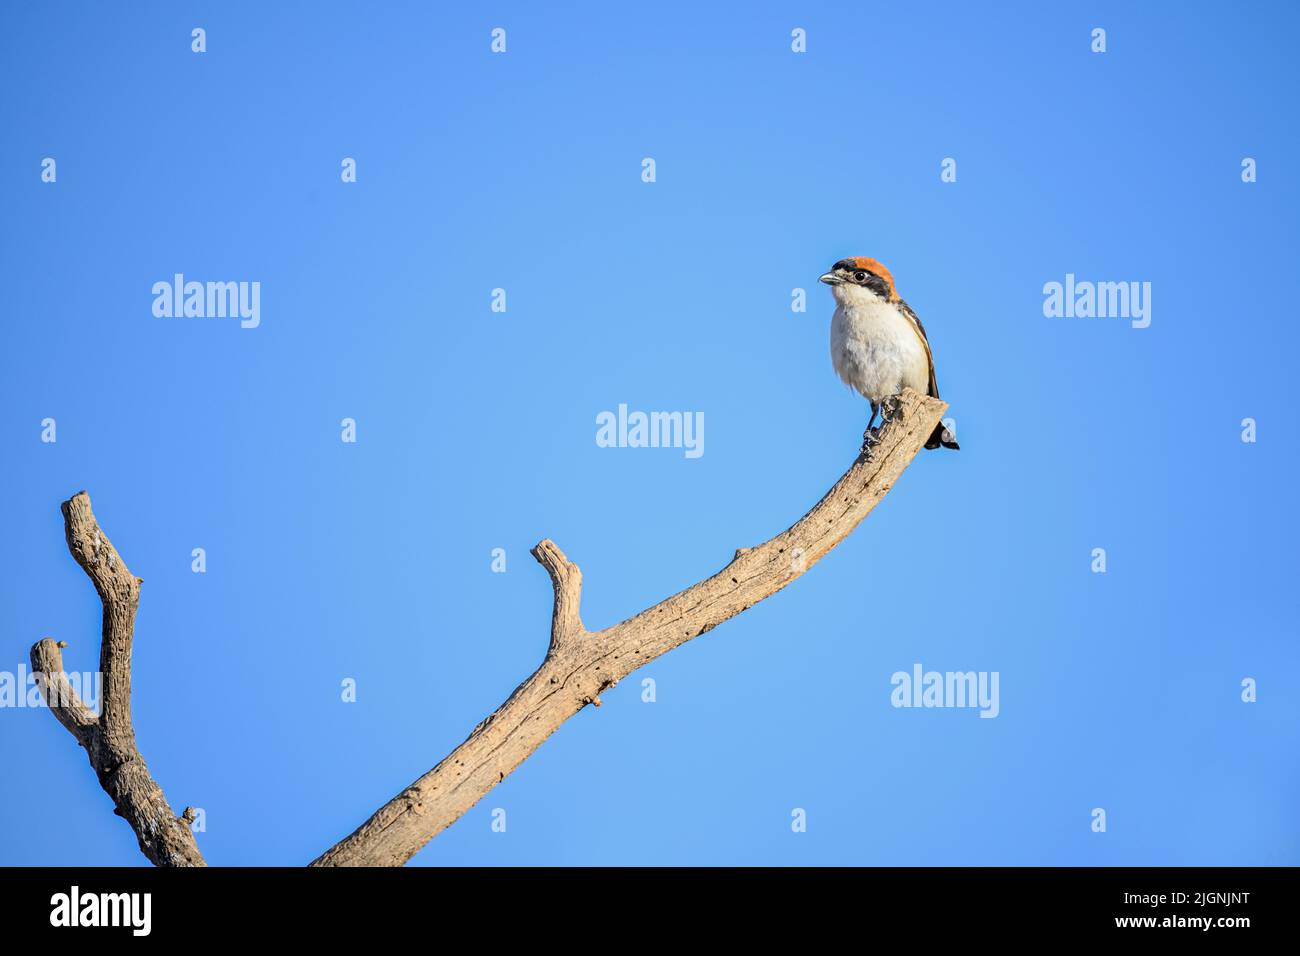 Lanius Senator oder gewöhnlicher Garnele, ist eine Art von Singvögeln in der Familie der Garnelen. Stockfoto